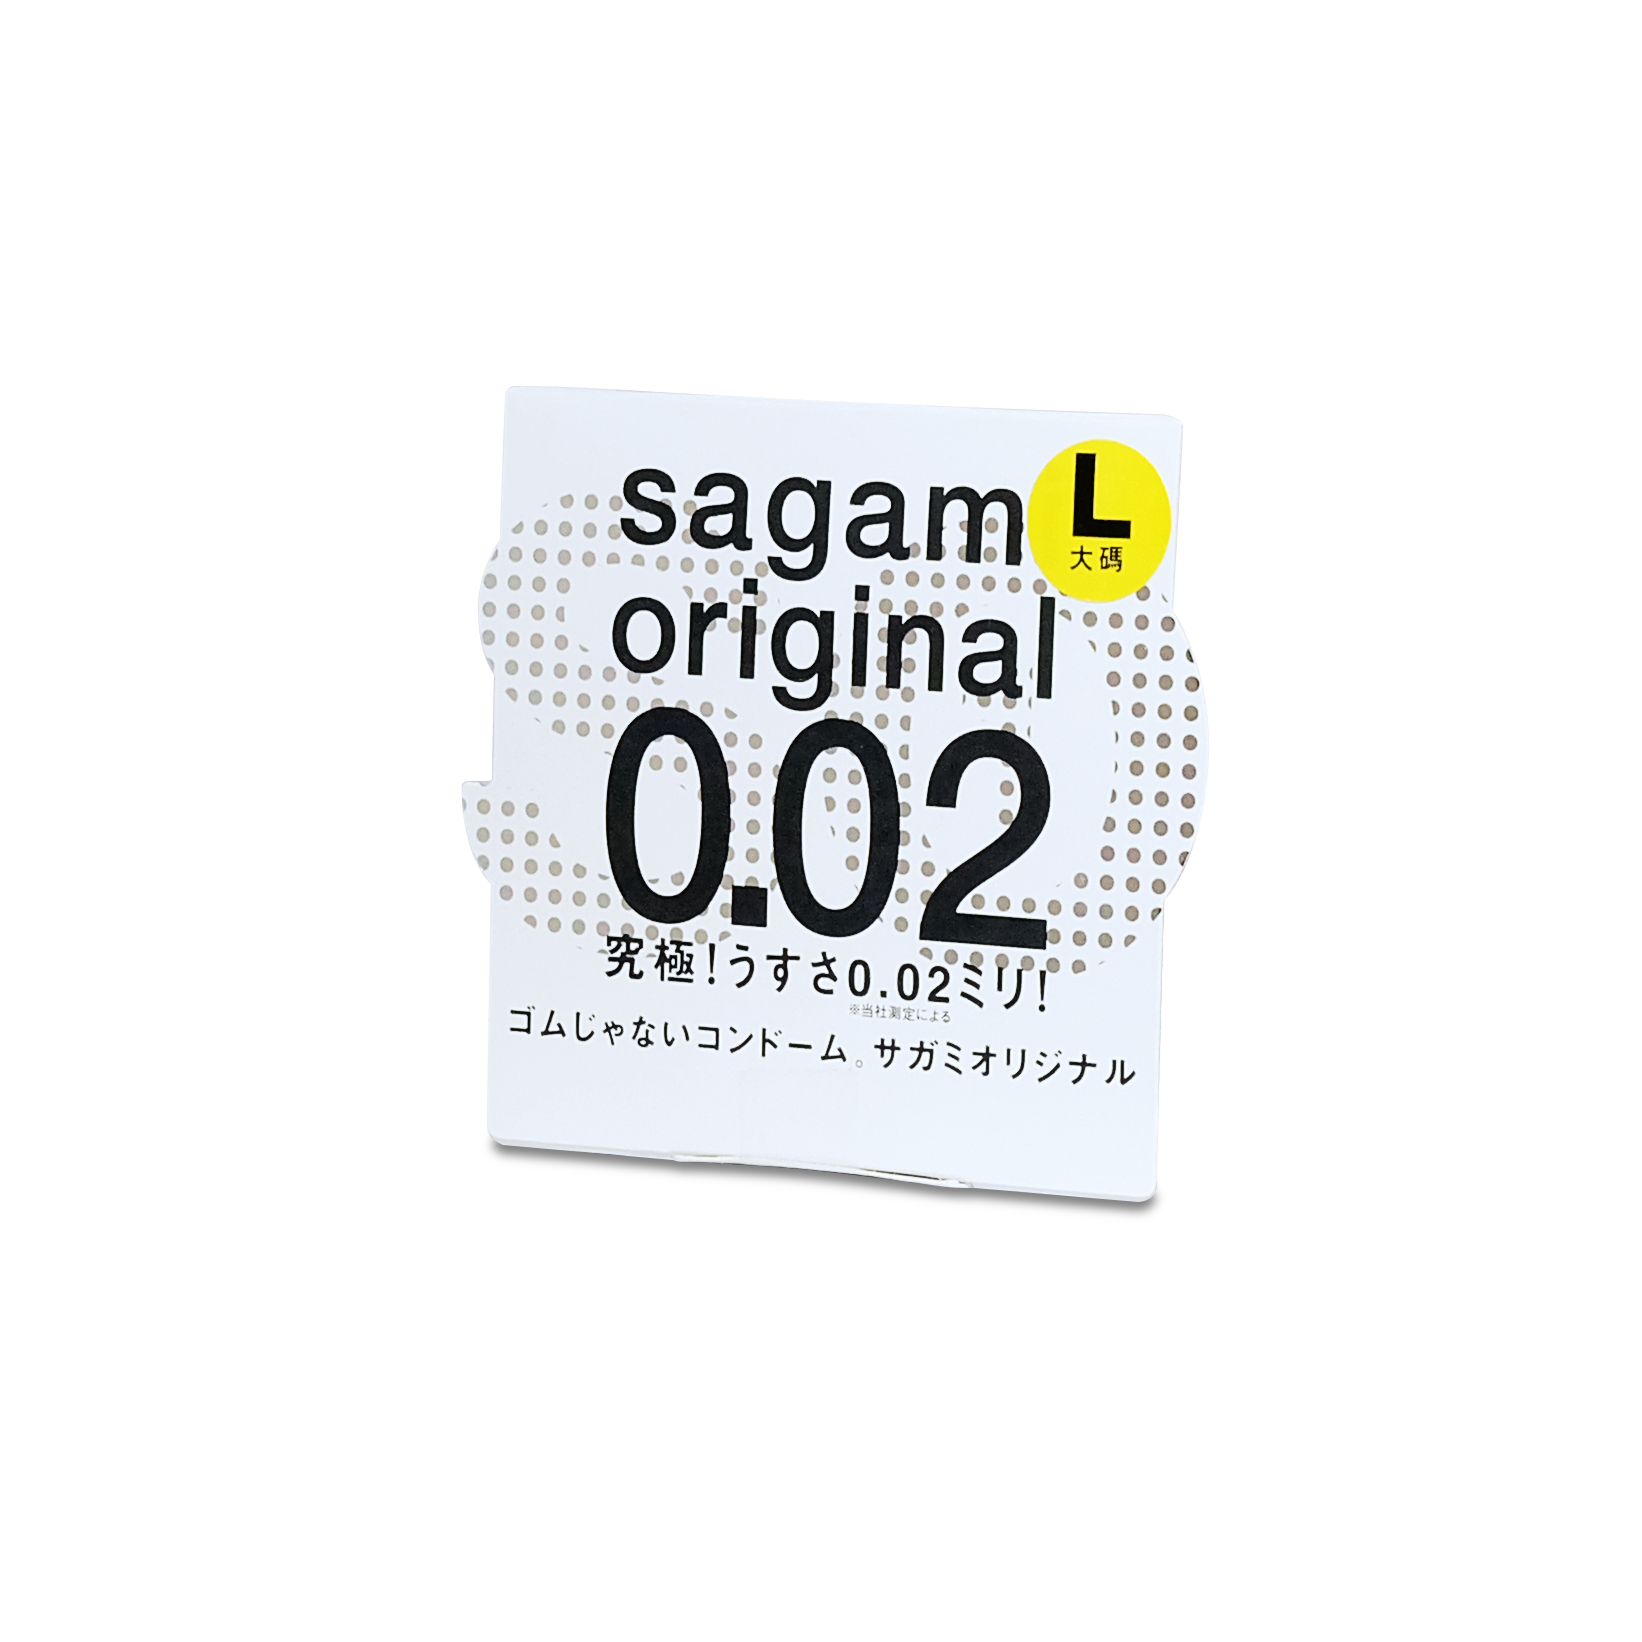 Sagami Original 0.02  <span>1-Pack</span>